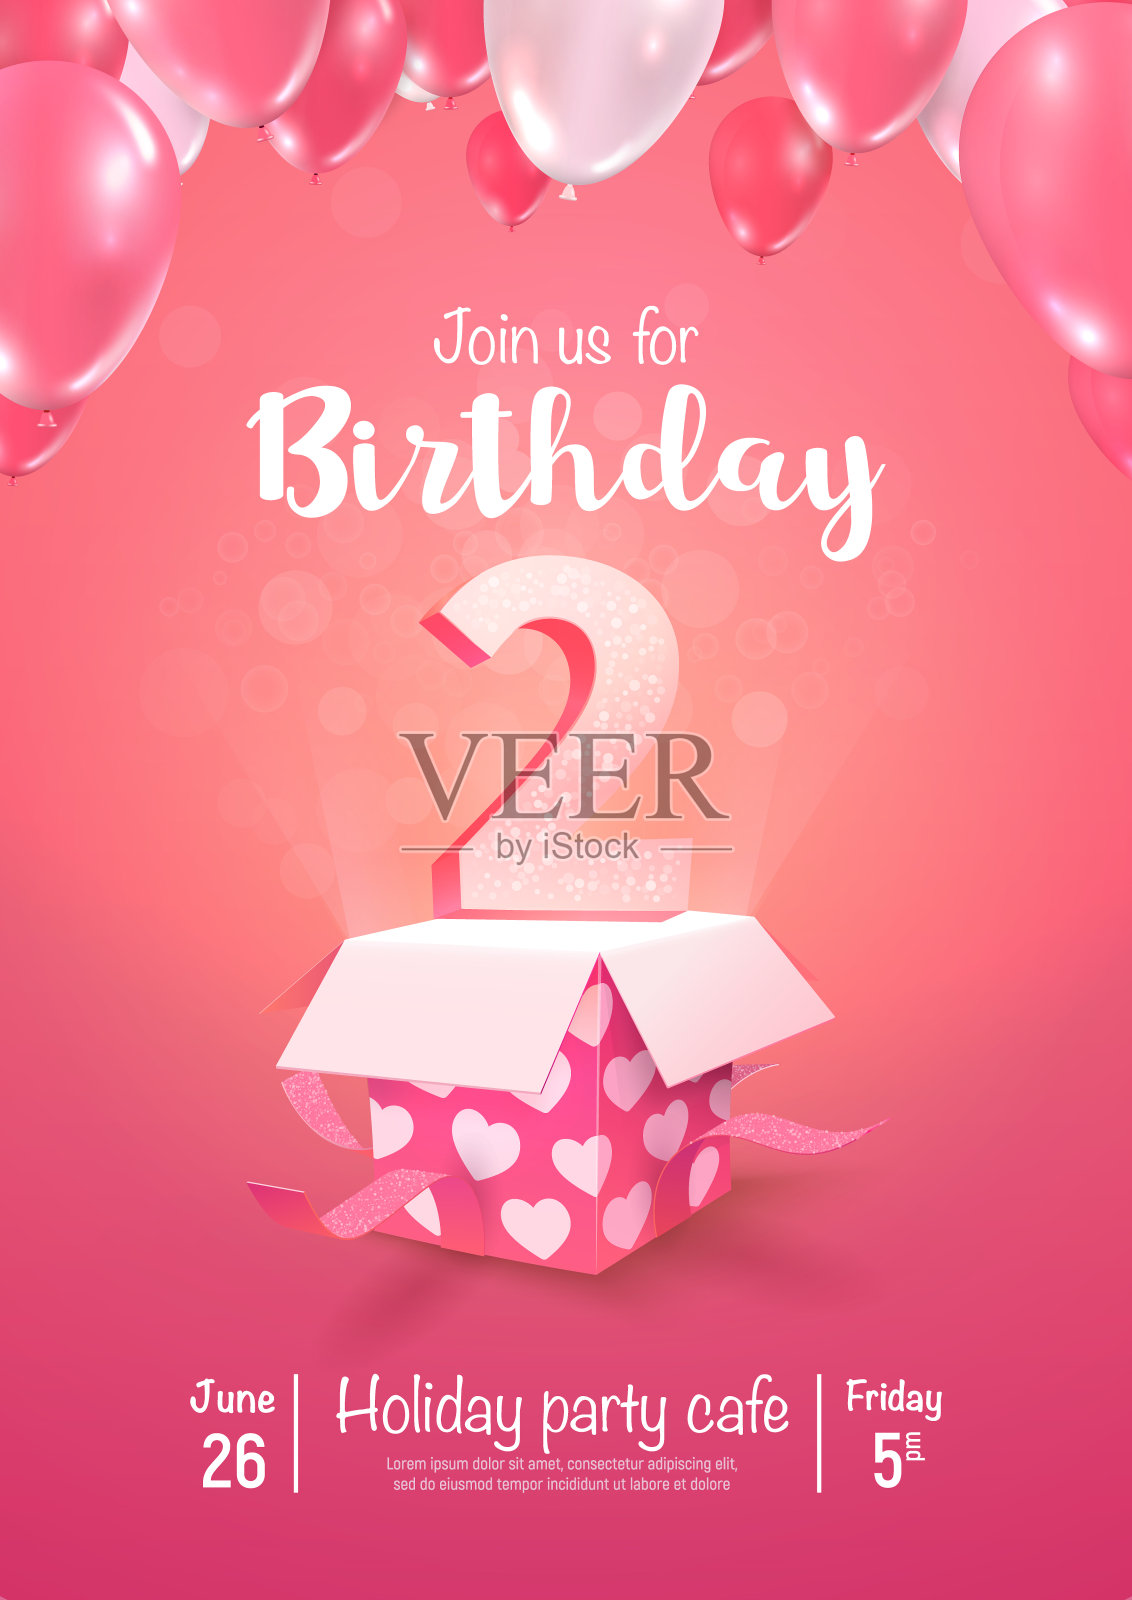 庆祝2年生日矢量3d插图在软背景。两周年庆典和打开礼盒气球海报模板设计模板素材